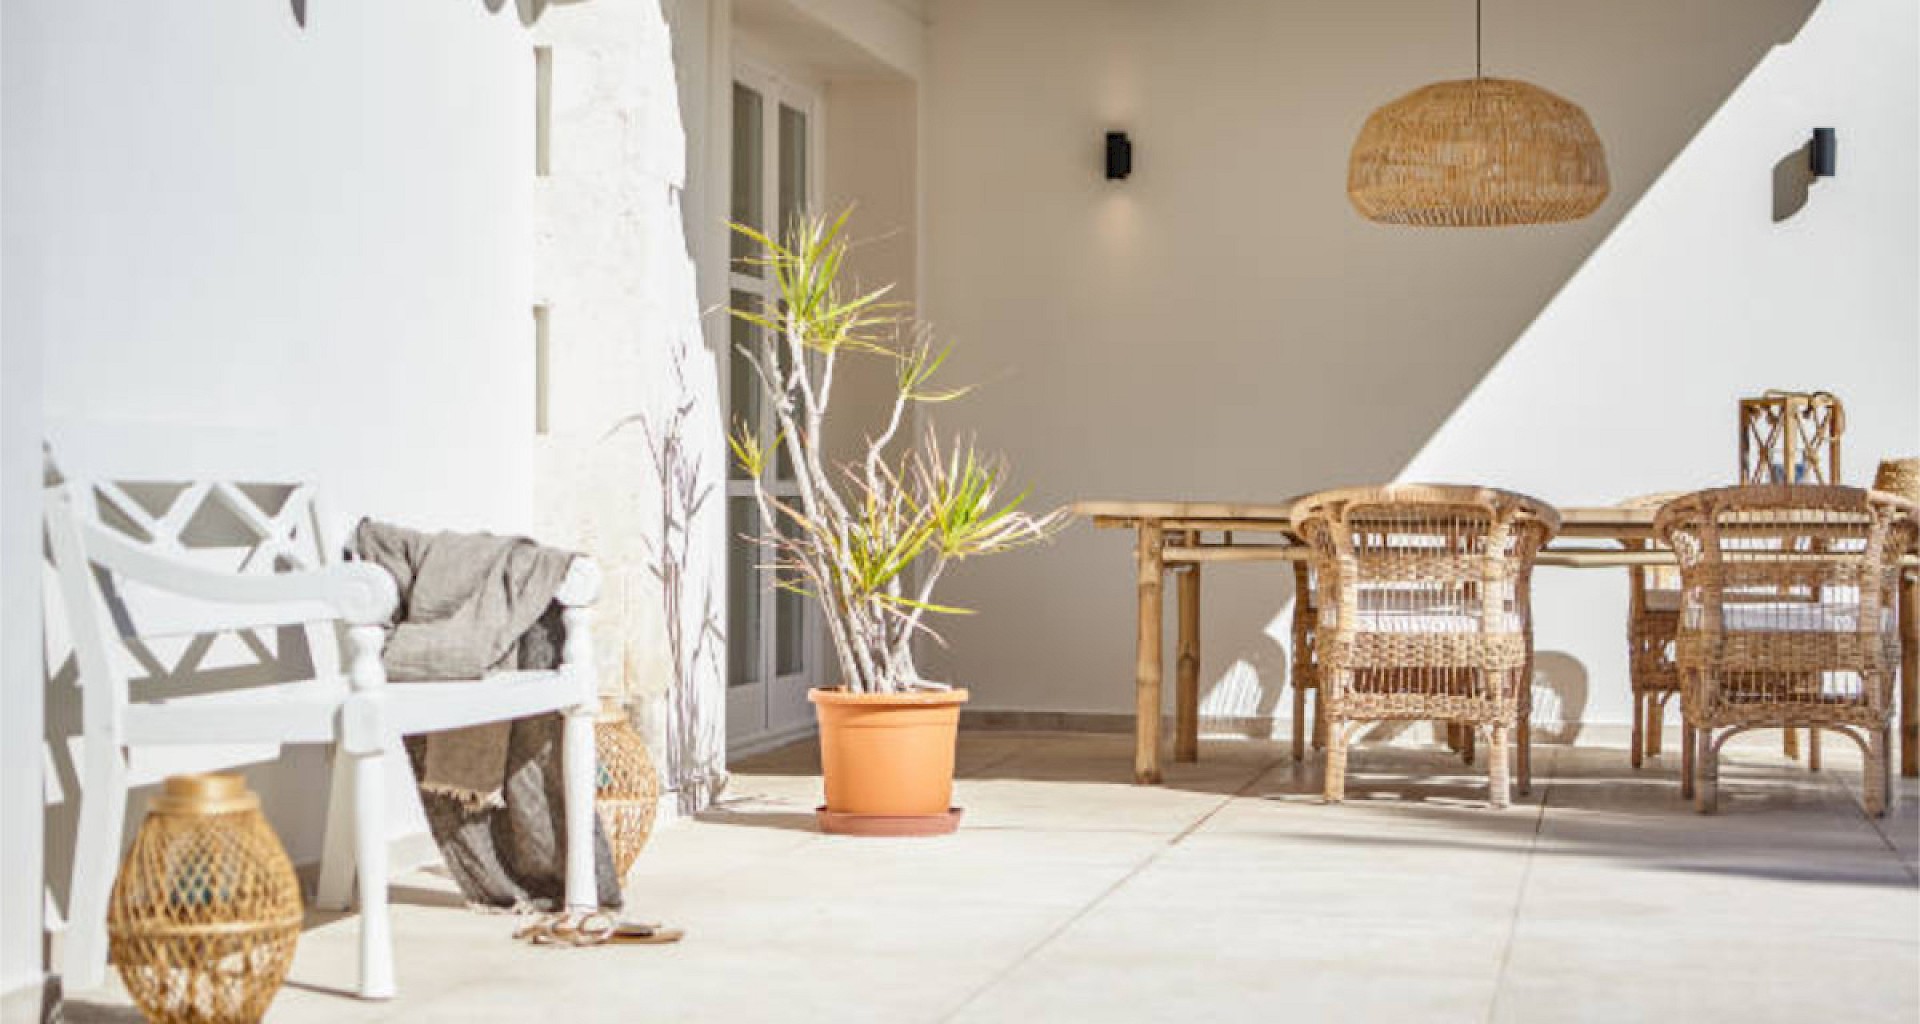 KROHN & LUEDEMANN Mediterrane Villa komplett renoviert in bester Lage in Santa Ponsa zum Kaufen 